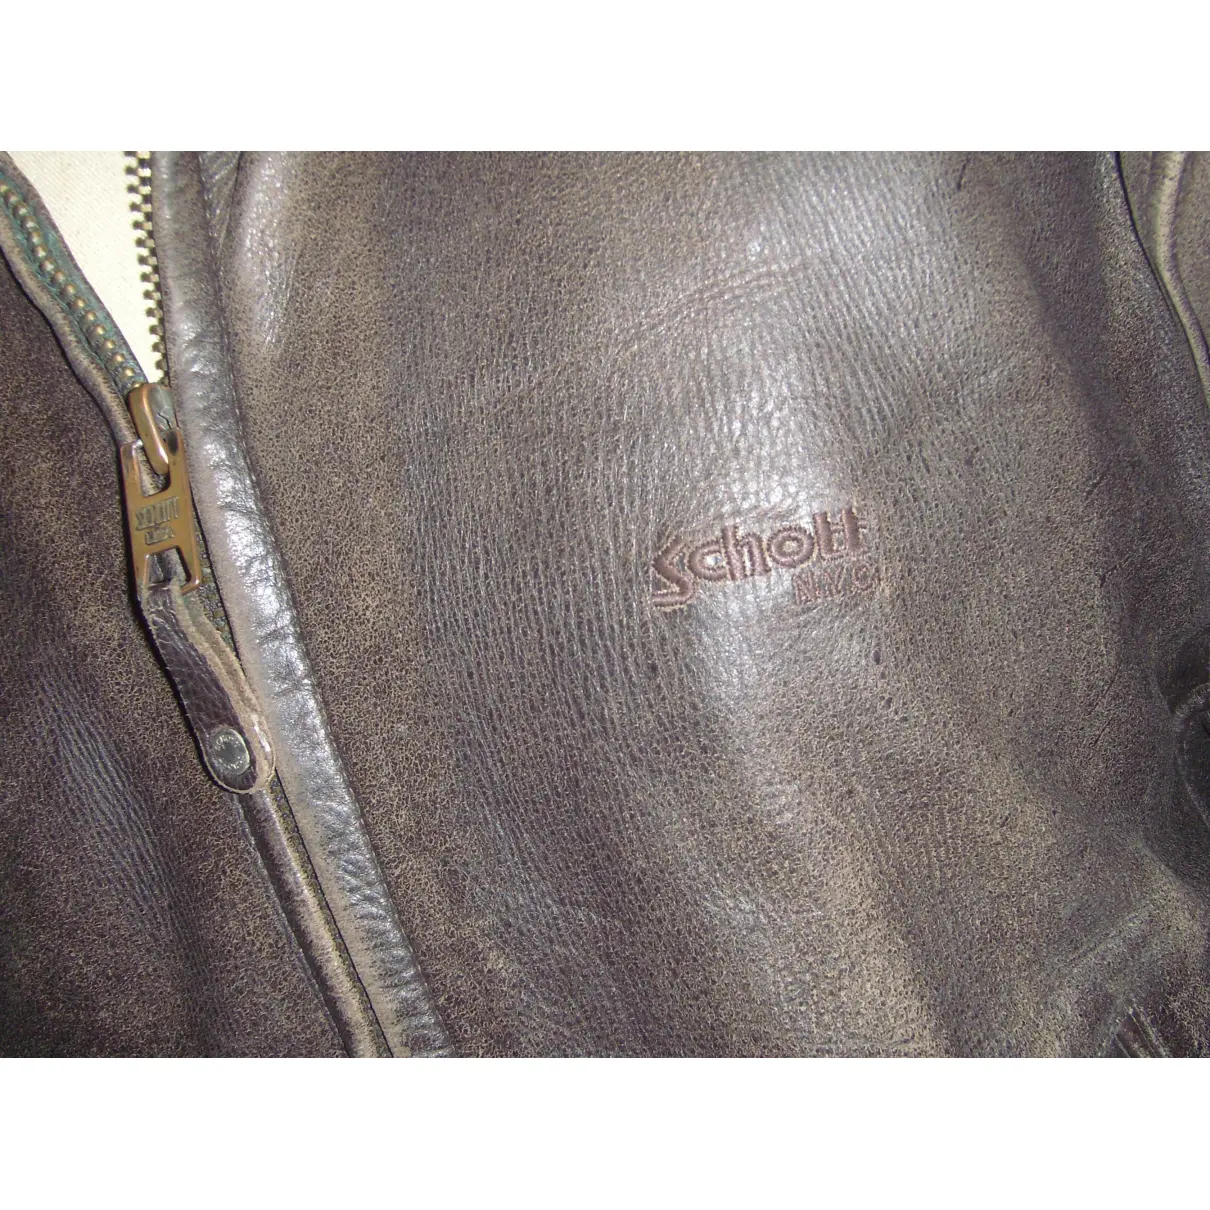 Buy Schott Leather jacket online - Vintage